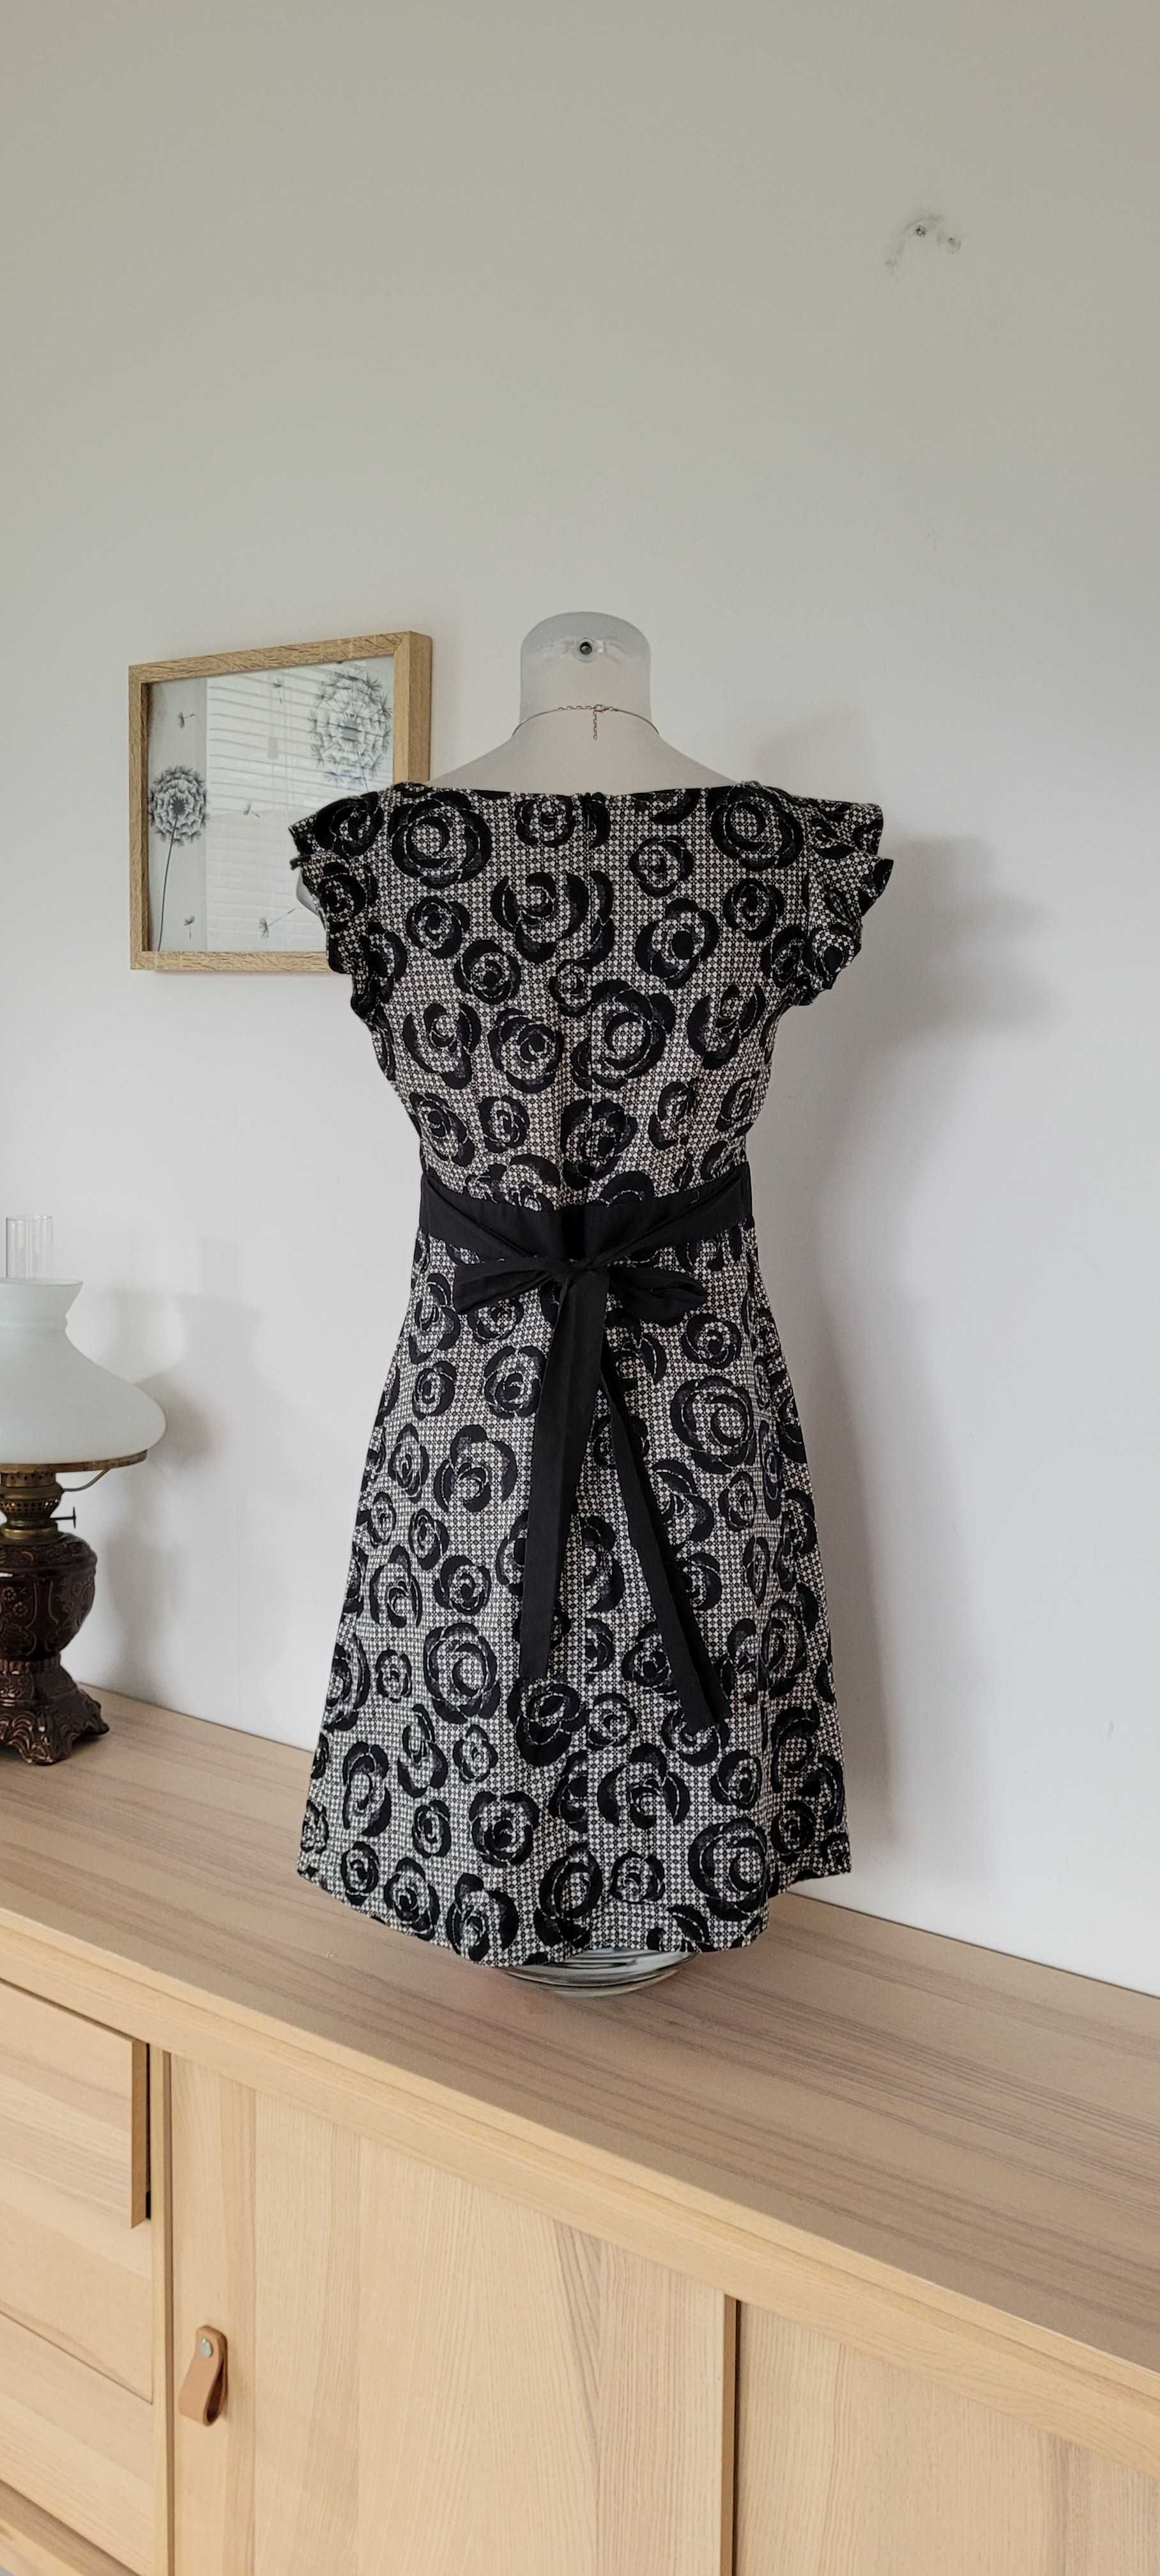 Czarno biała sukienka kwaiaty bawełna Topshop,rozmiar 38